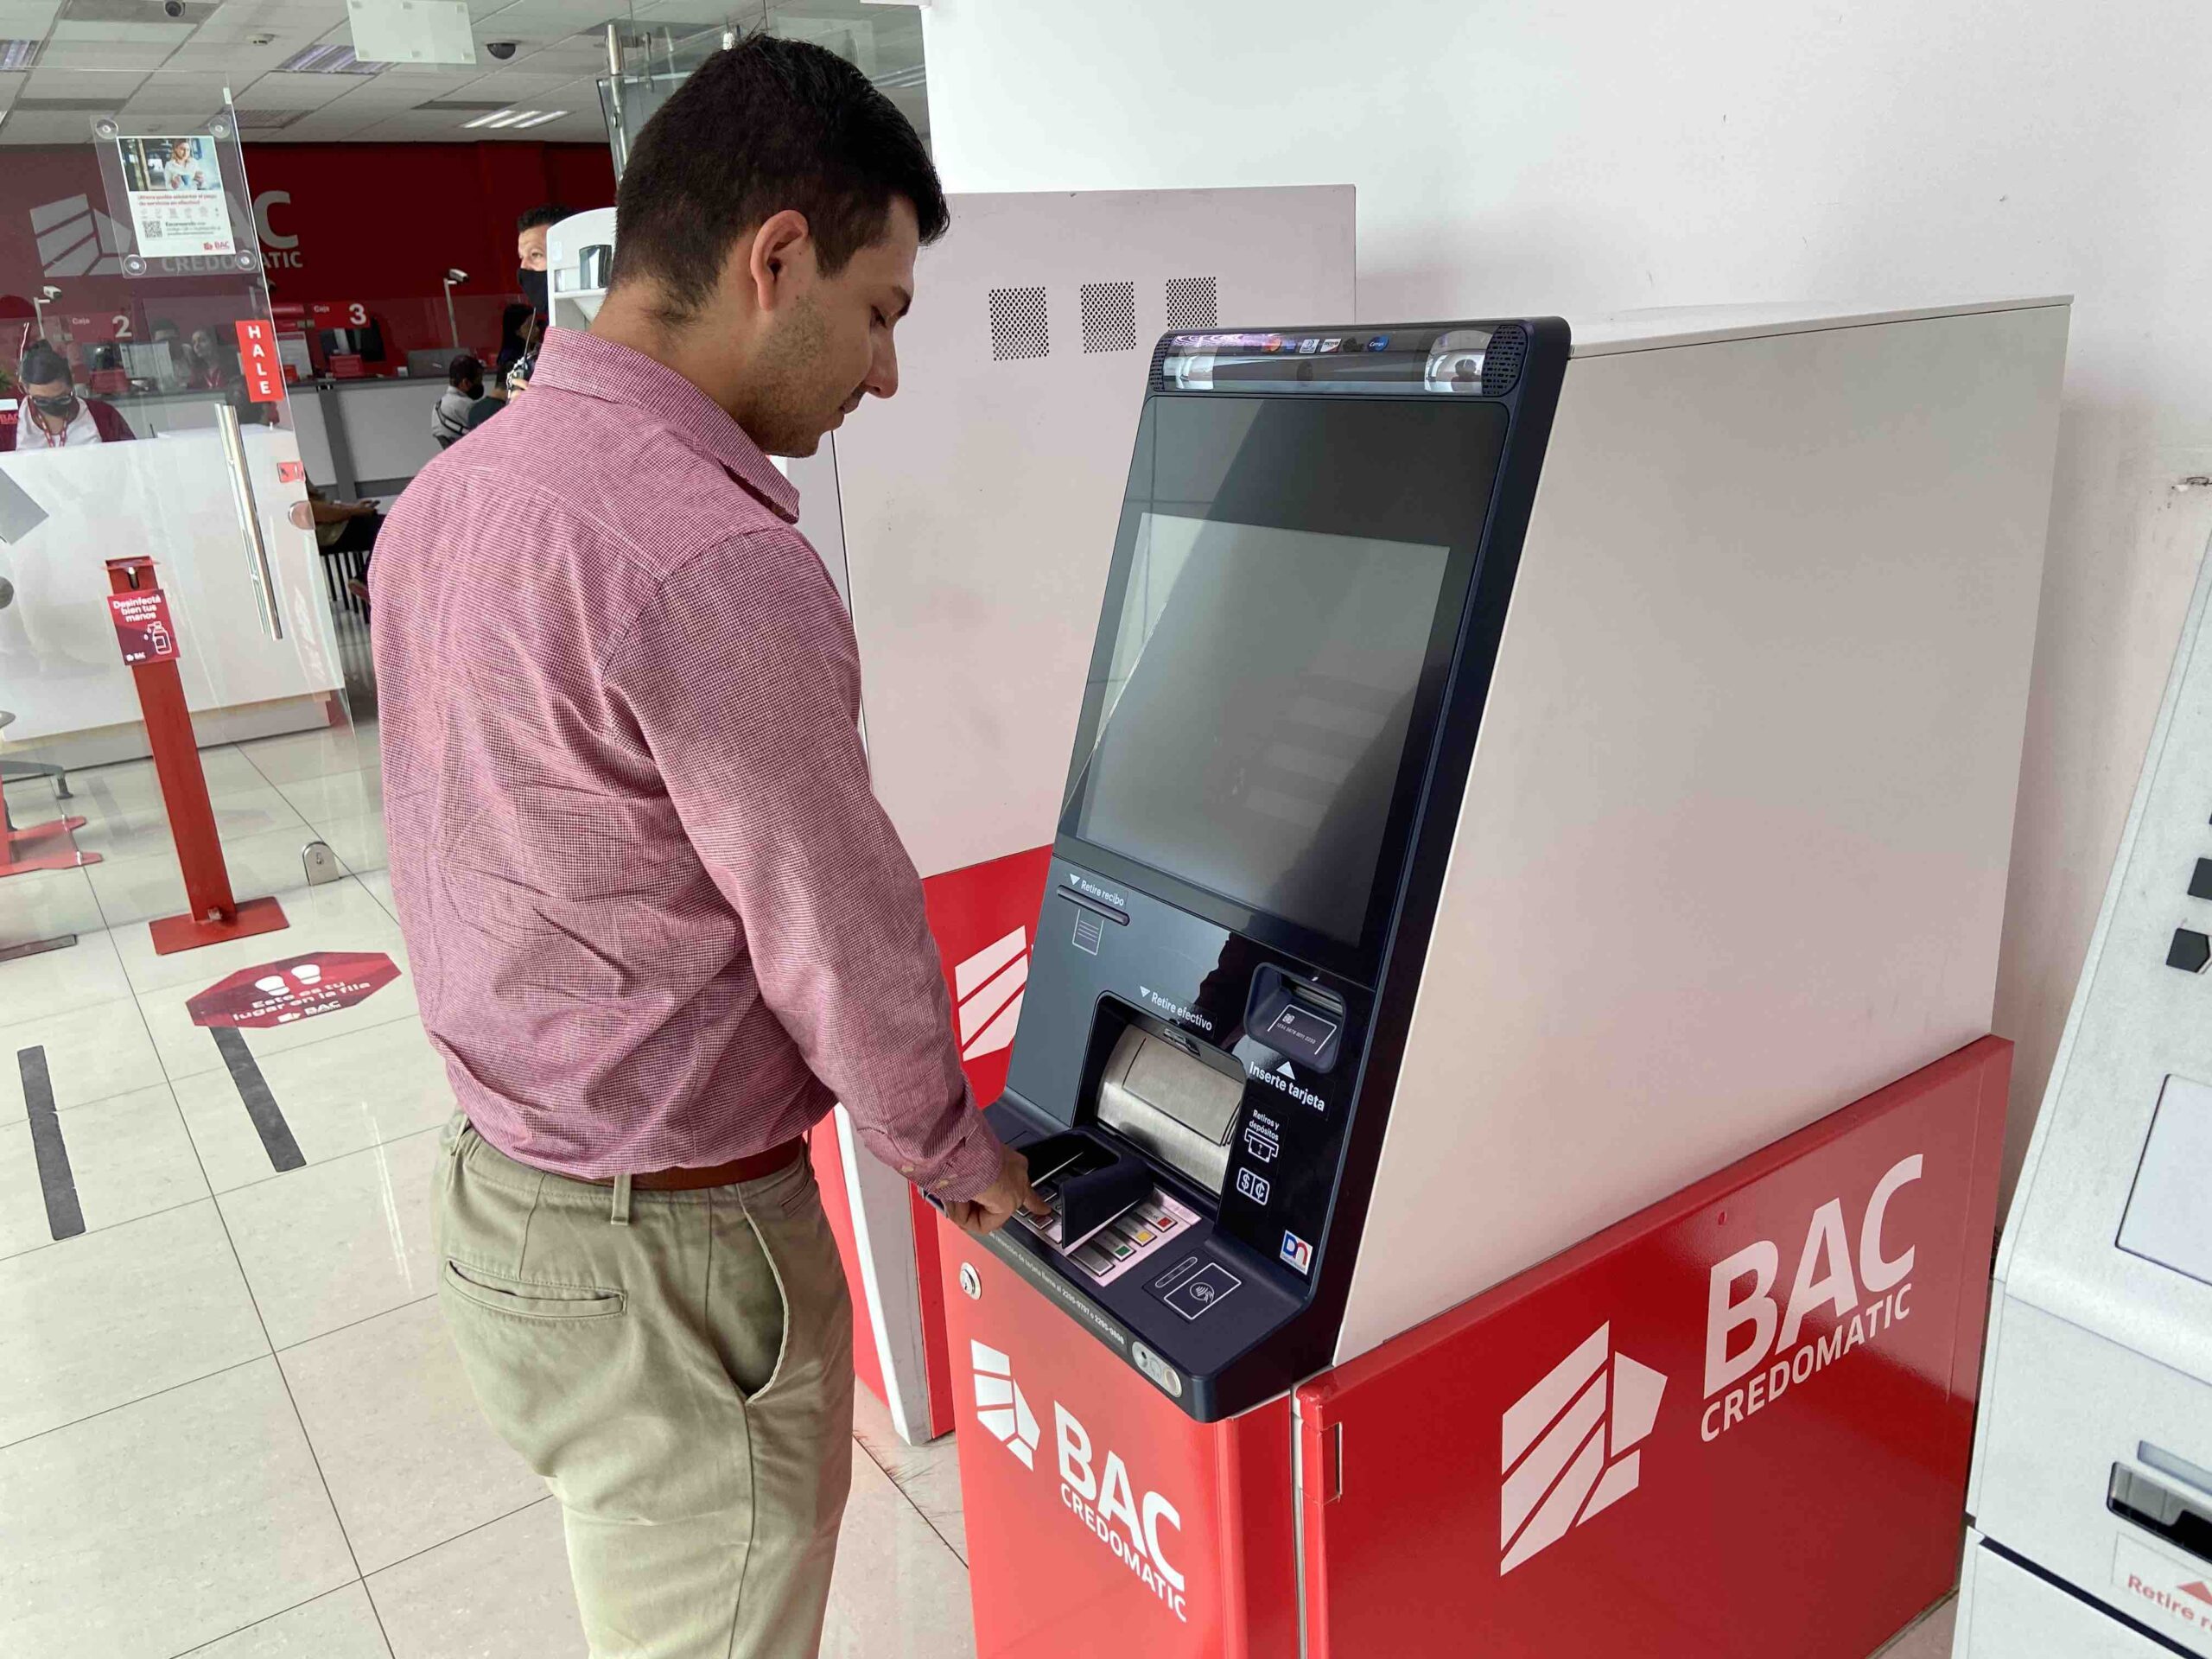 BAC realizará gran inversión para modernizar su red de ATM